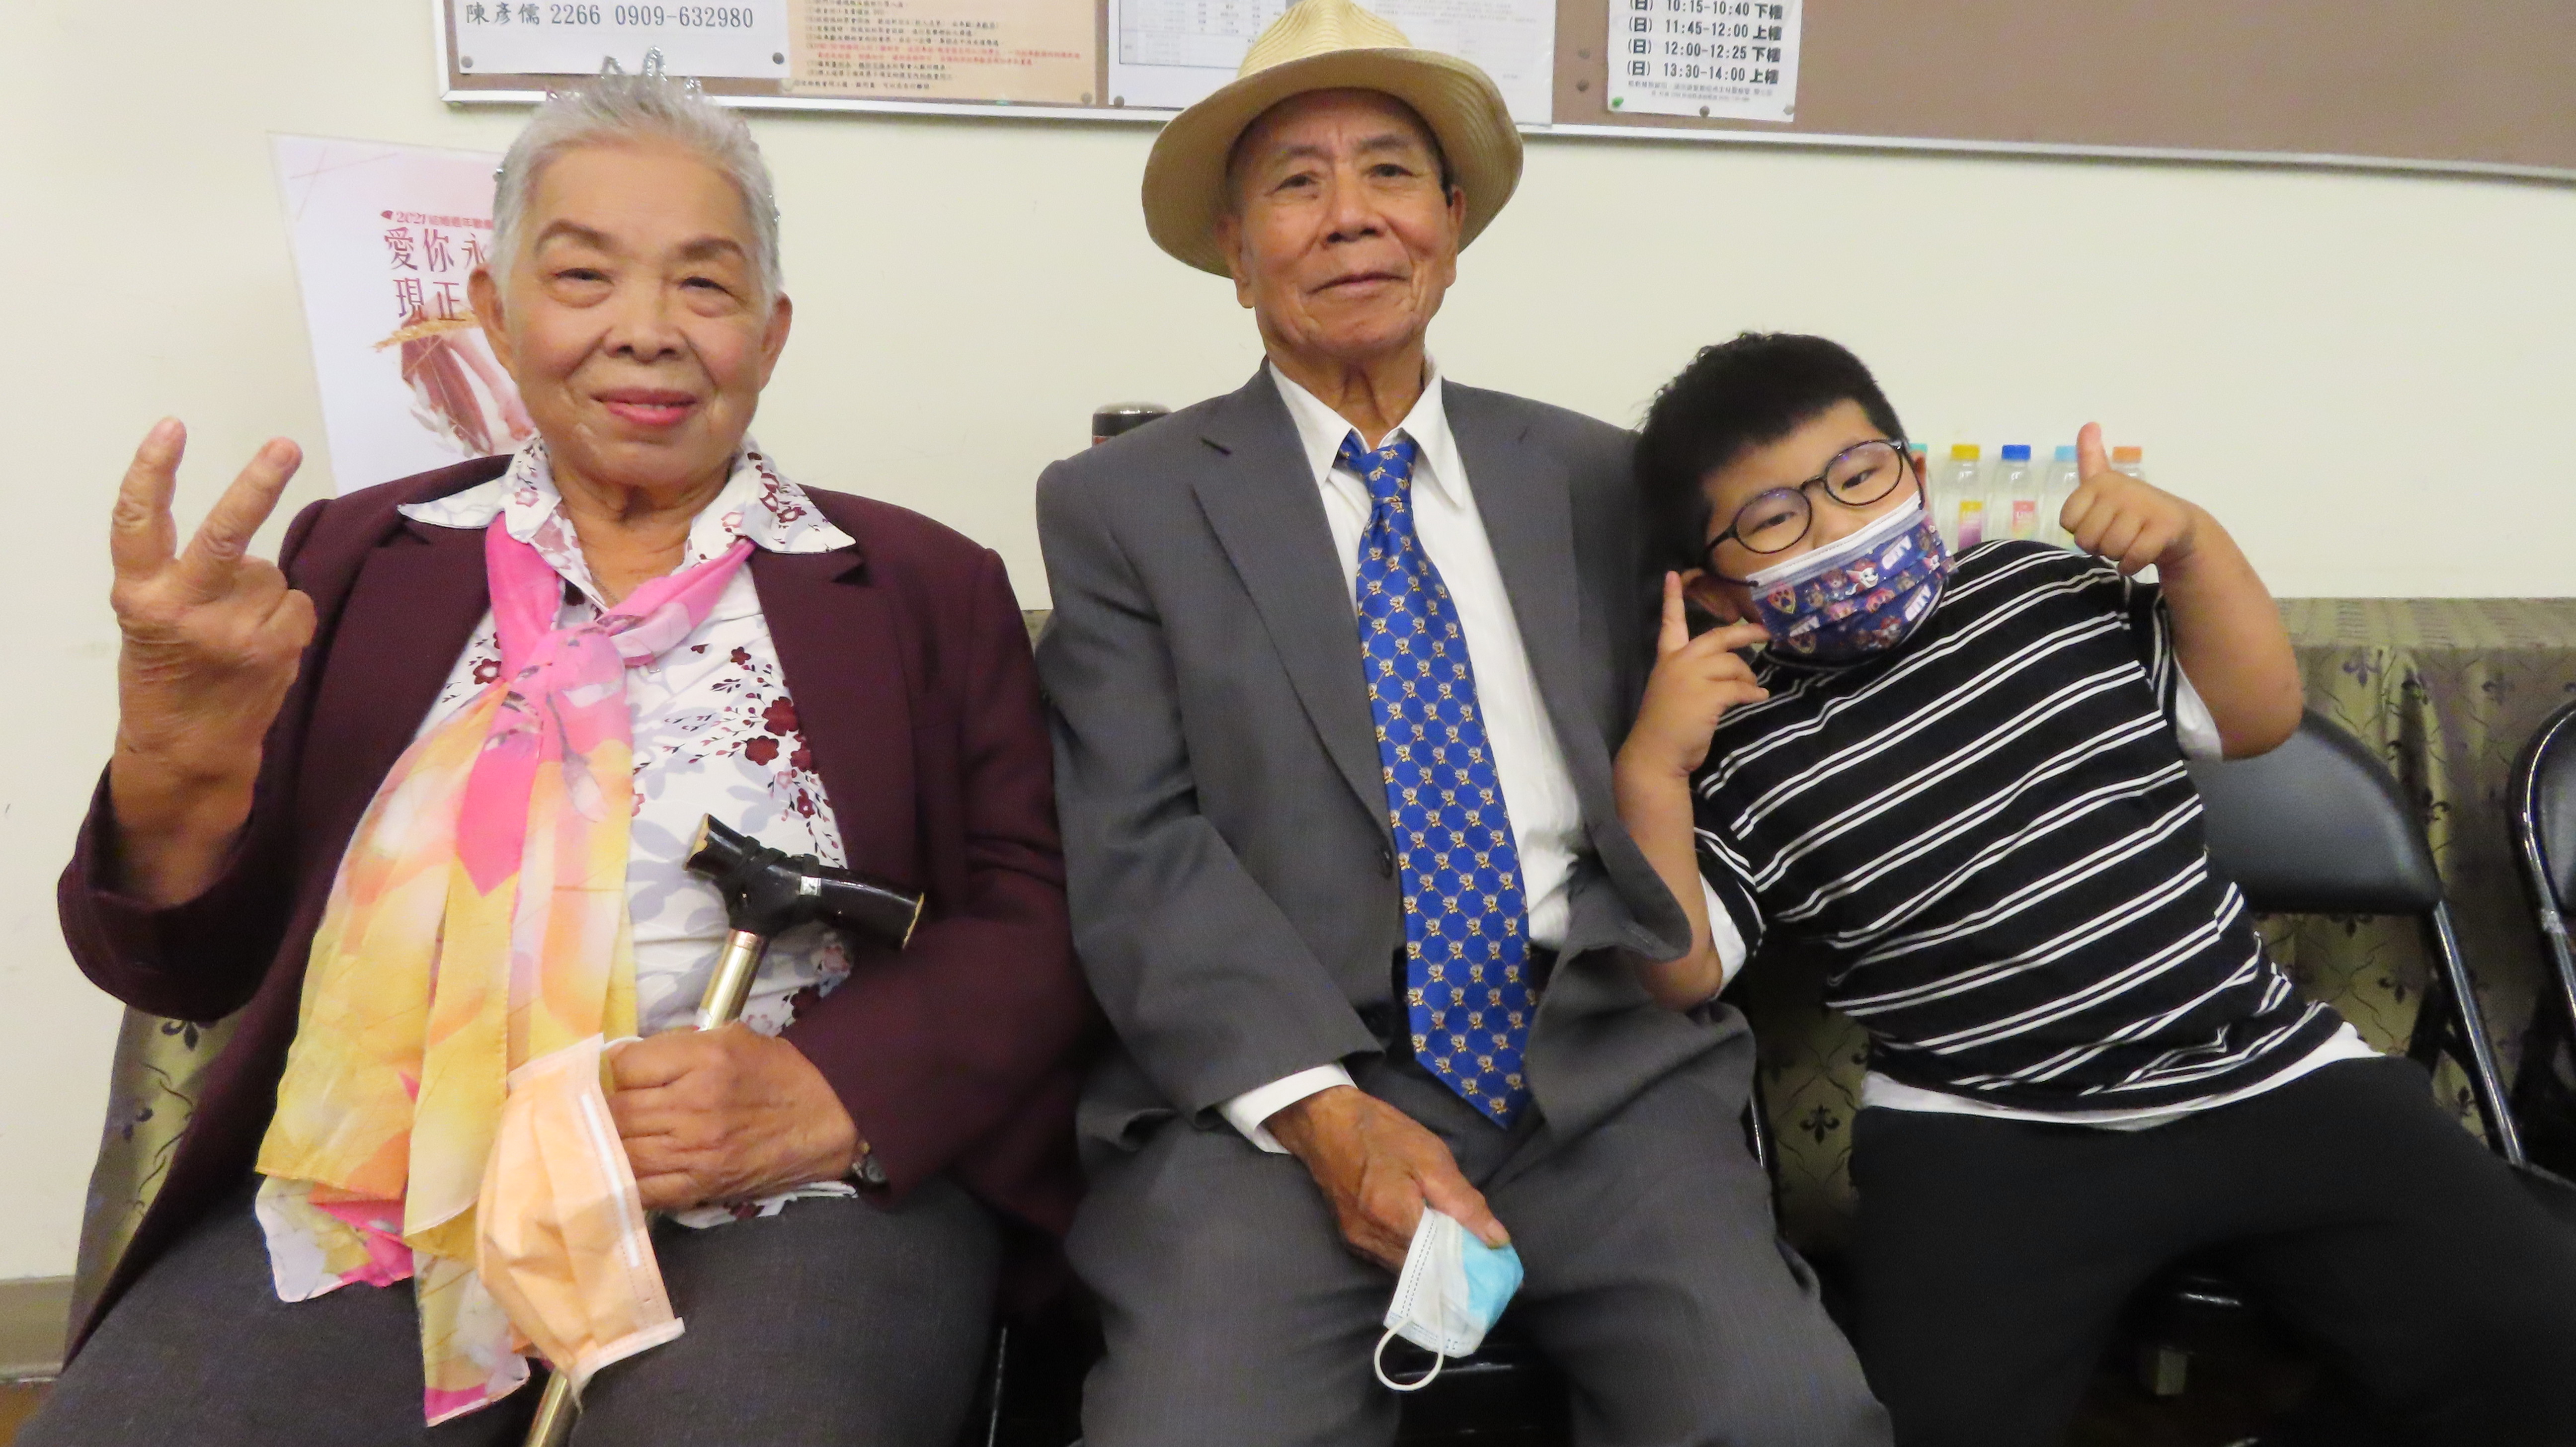 結婚63年的鄭君定及王美菊伉儷與他們的曾孫